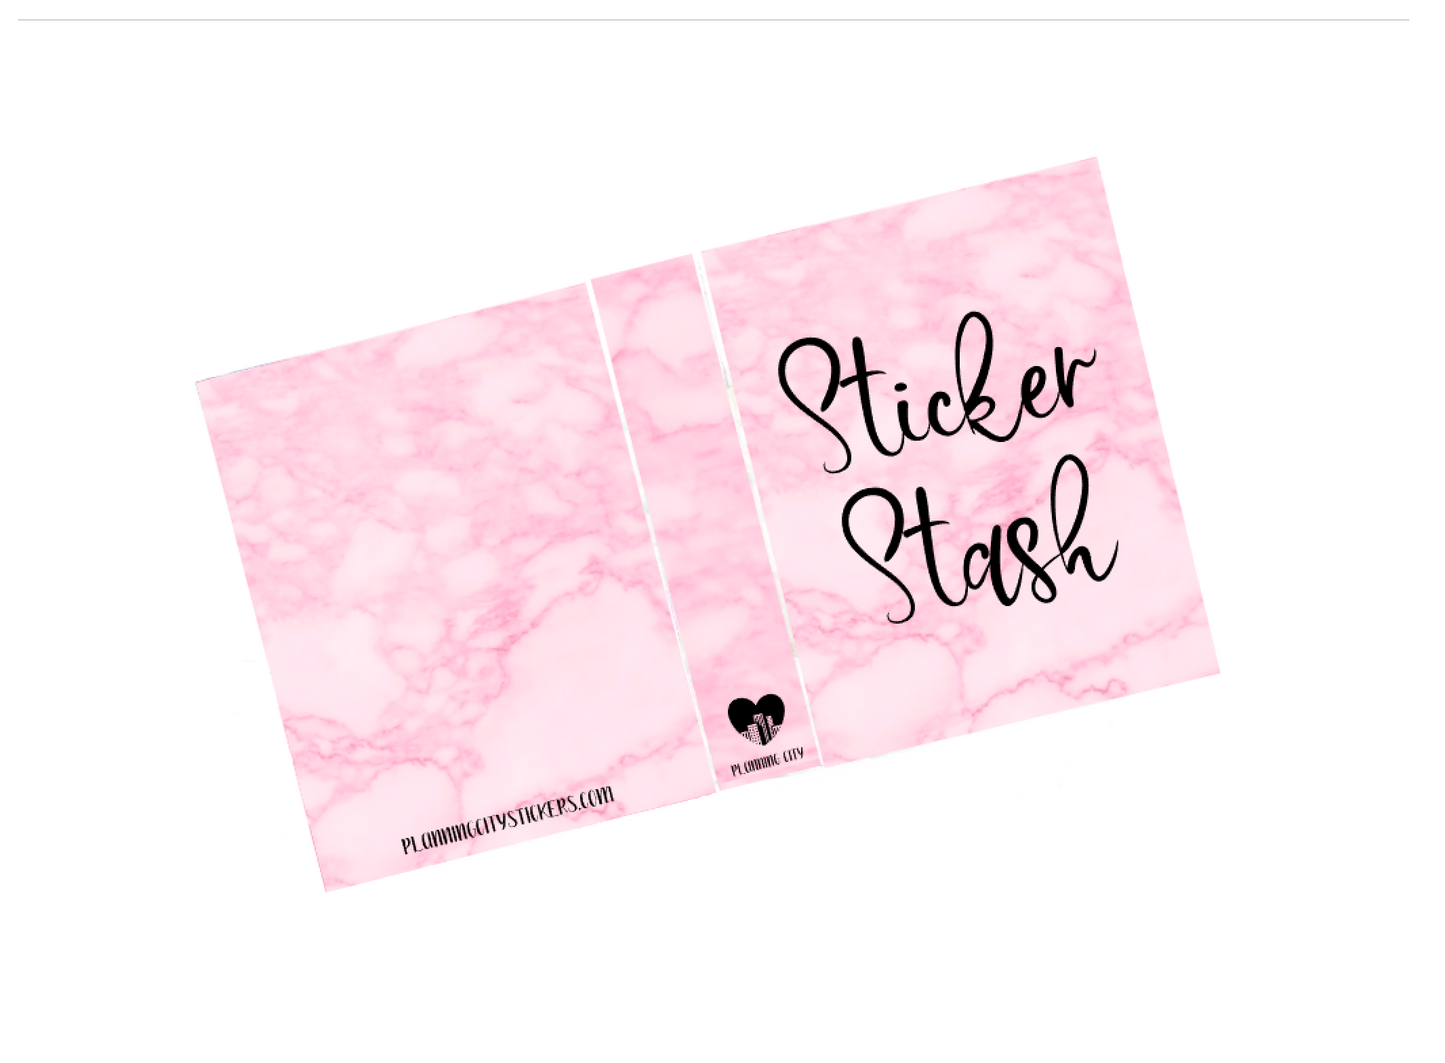 Sticker Stash 4x6 Mini Album